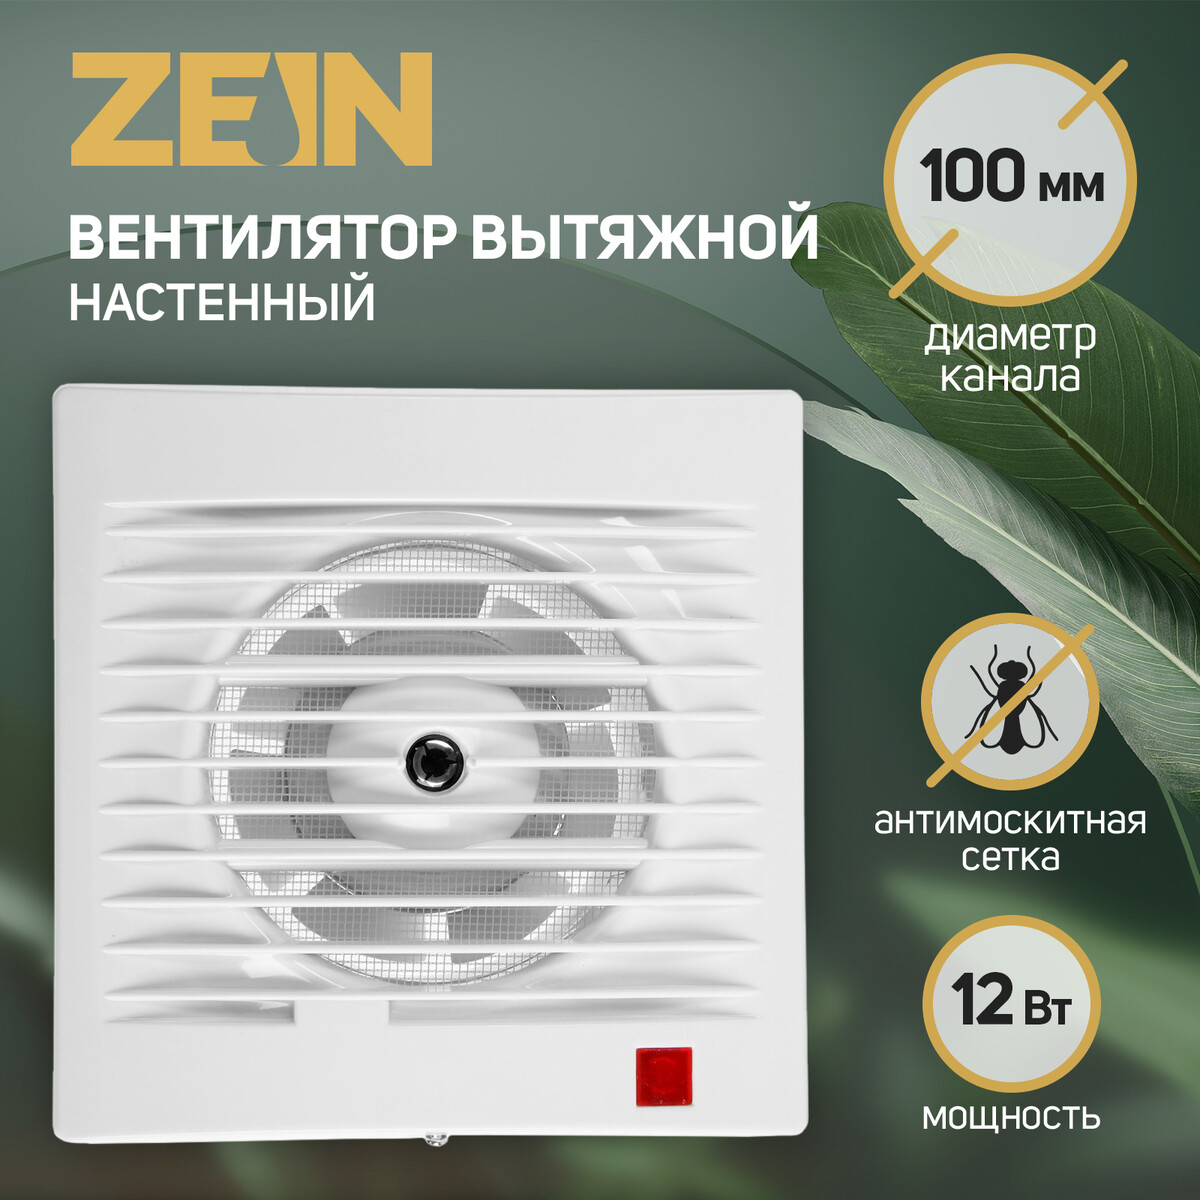 Вентилятор вытяжной zein lof-09, d=100 мм, 220 в, 12 вт, москитная сетка, белый